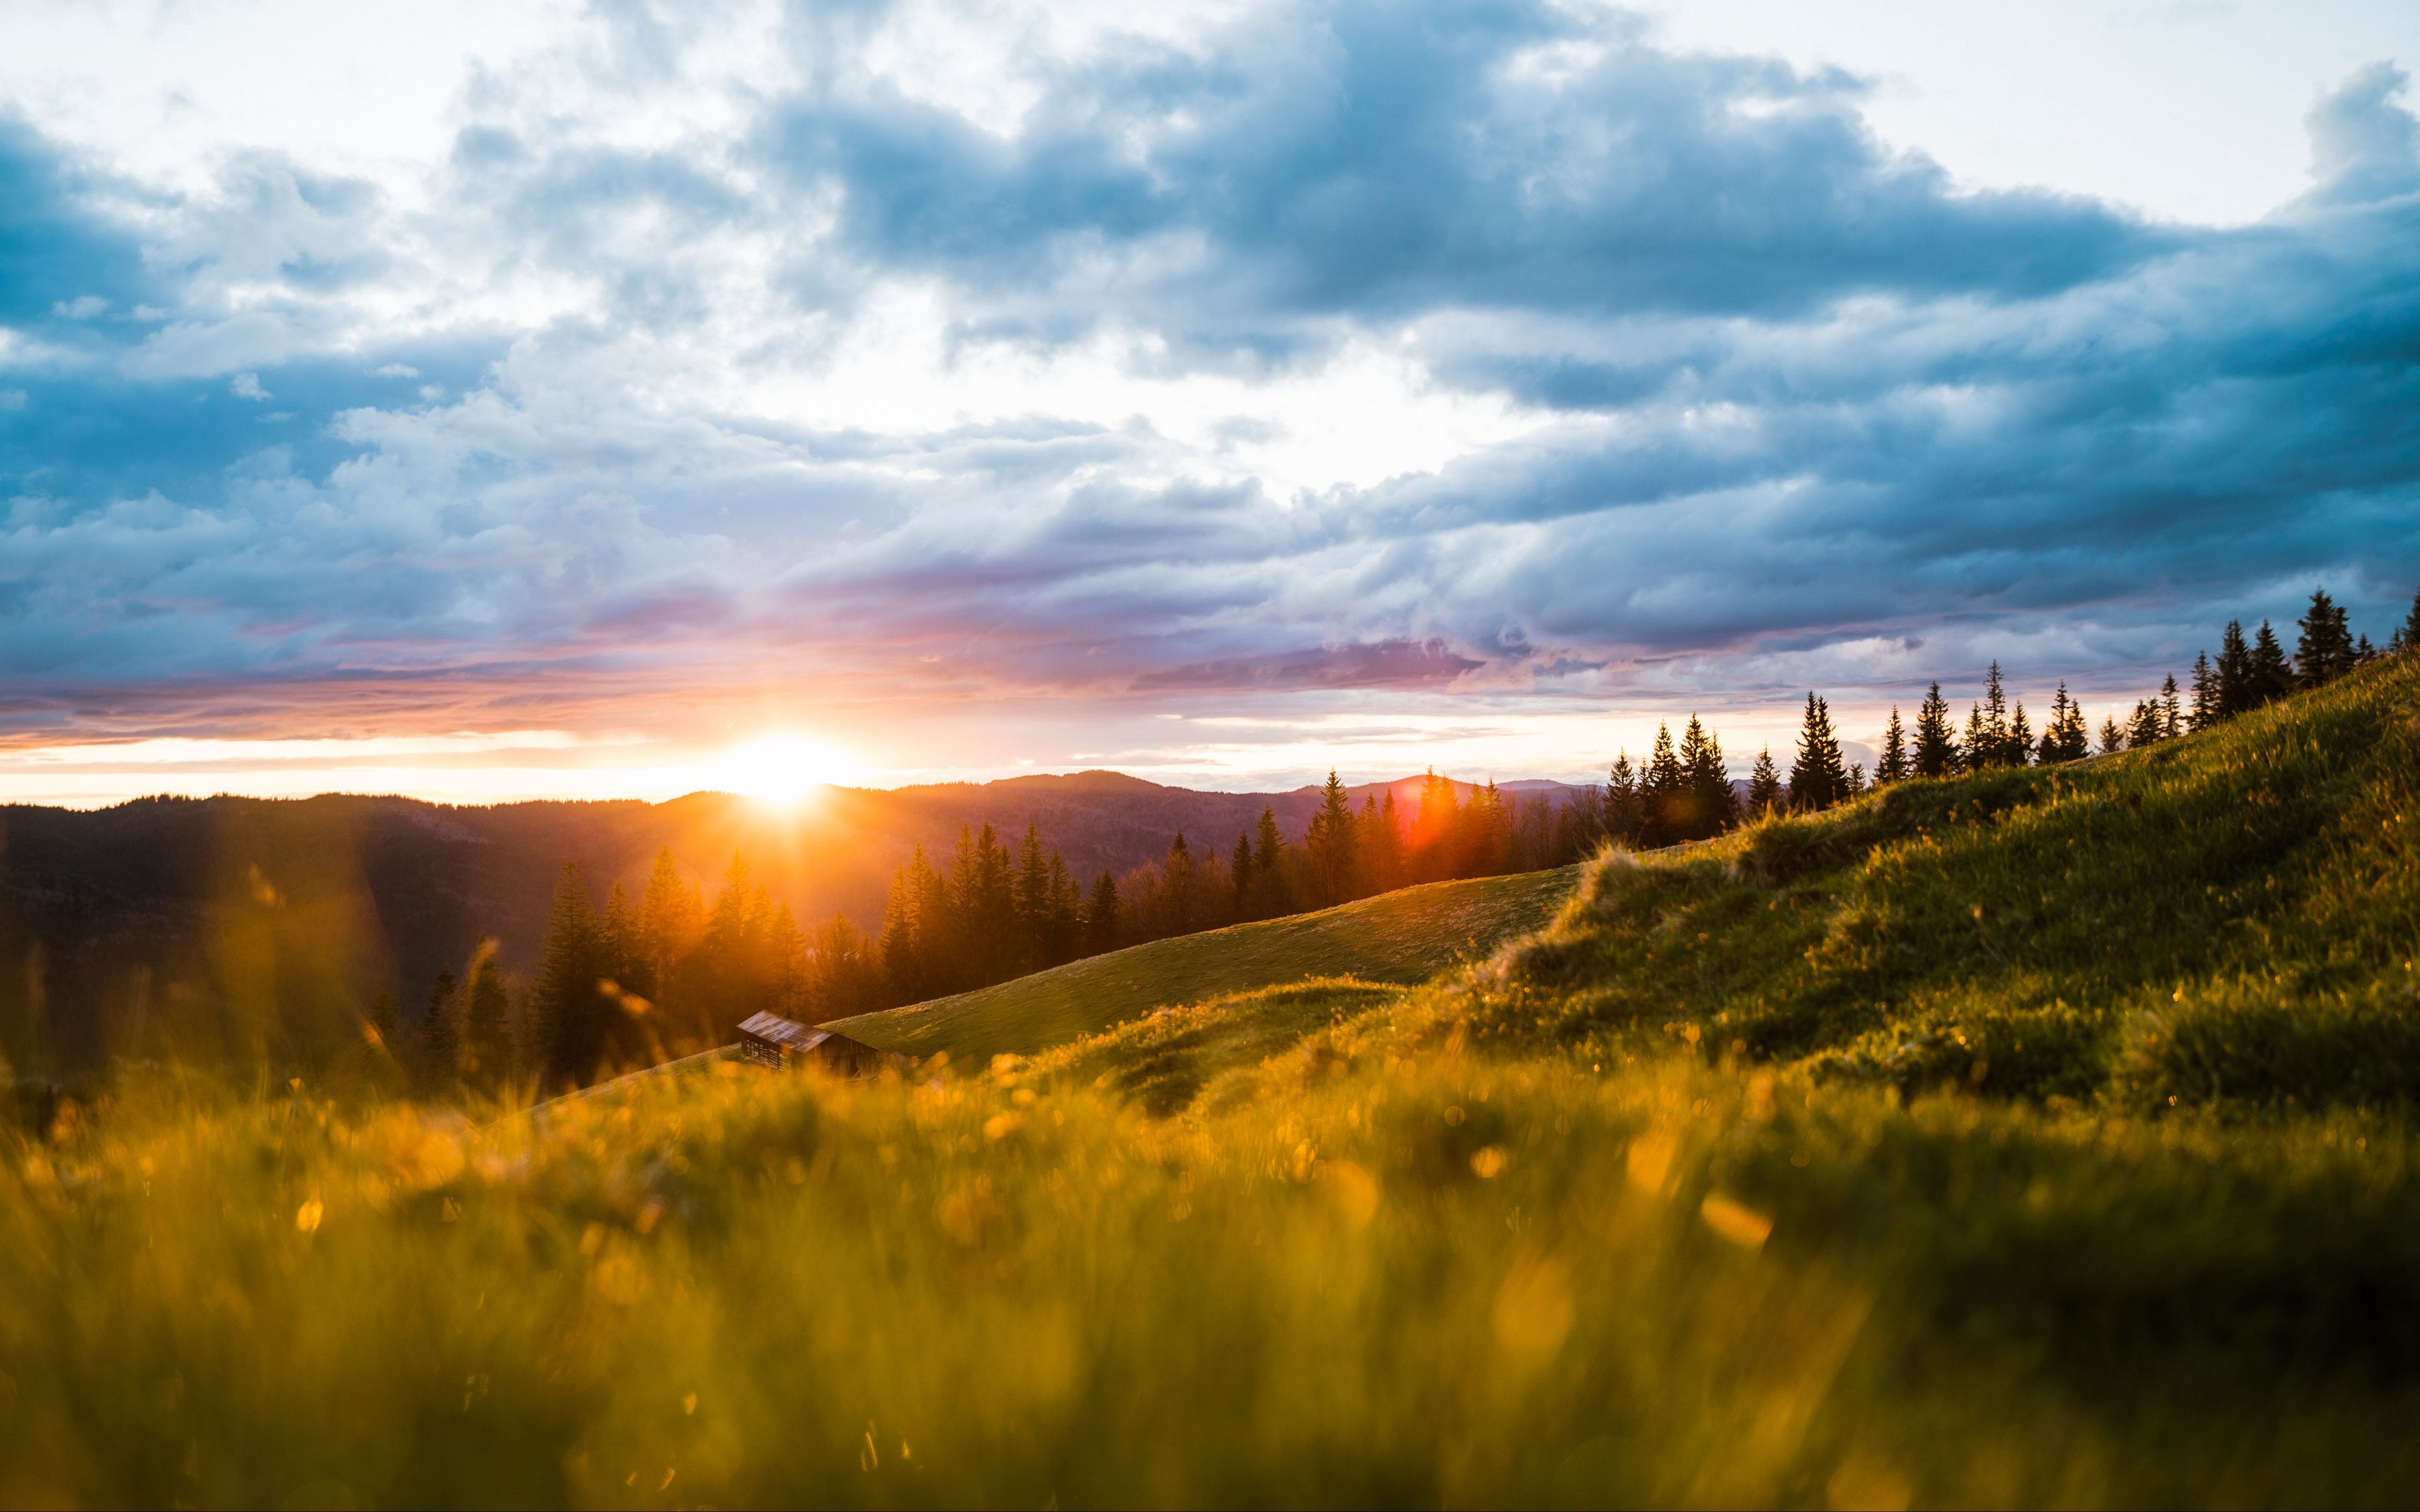 Hãy khám phá sự đẹp tự nhiên của đồi núi, mặt trời và đồng cỏ trong hình nền điện thoại của bạn. Lấy cảm hứng cho ngày mới và thỏa sức yêu thích thiên nhiên với những bức ảnh tuyệt đẹp này. Để điện thoại của bạn trở thành một mảnh nghệ thuật.